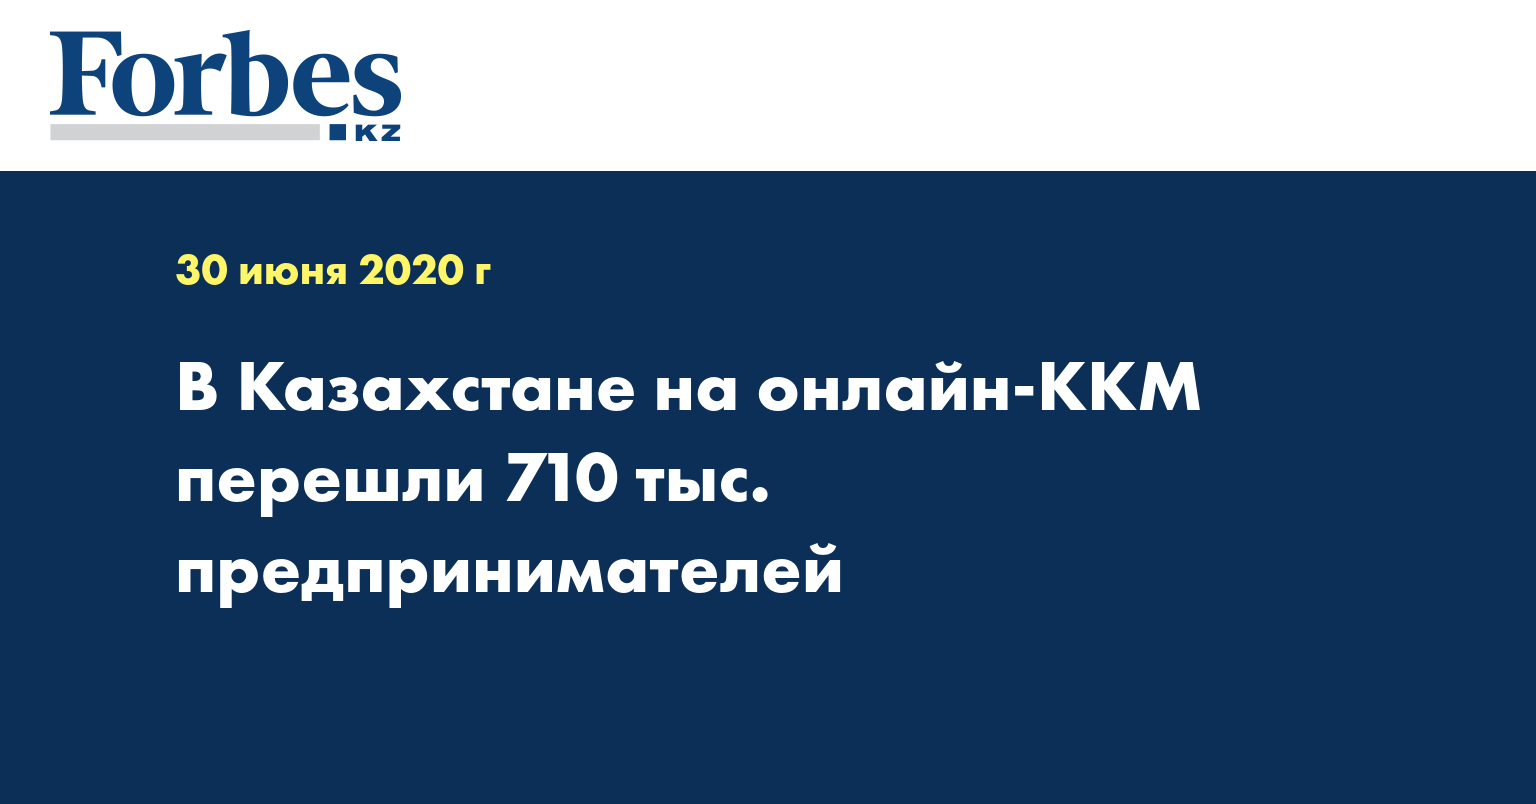 В Казахстане на онлайн-ККМ перешли 710 тыc. предпринимателей